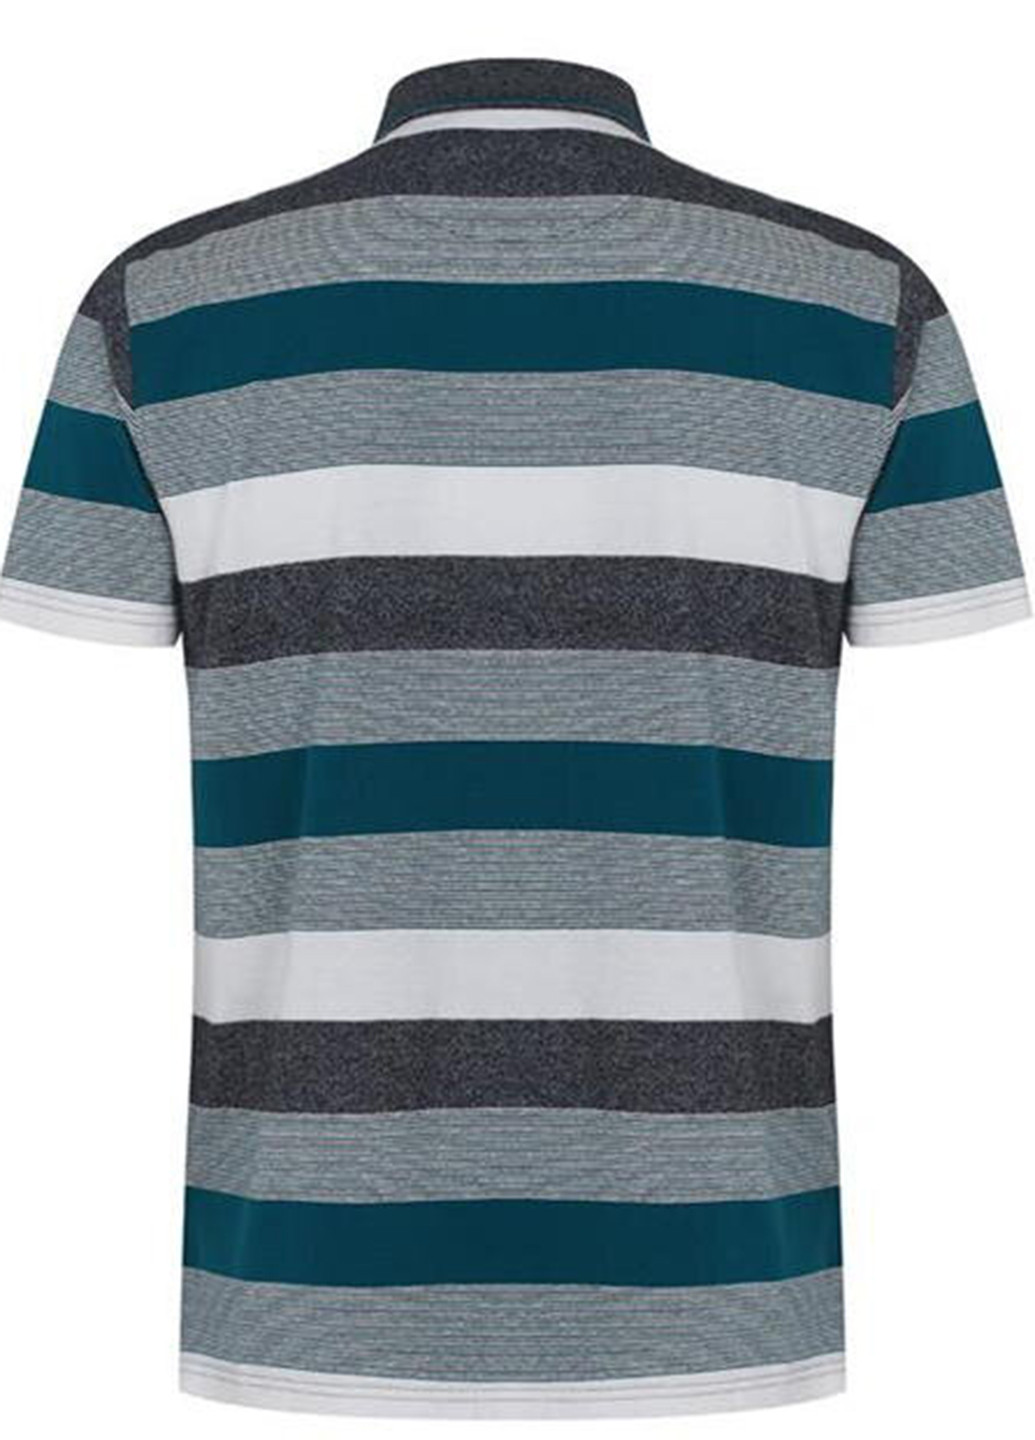 Цветная футболка-поло для мужчин Pierre Cardin в полоску